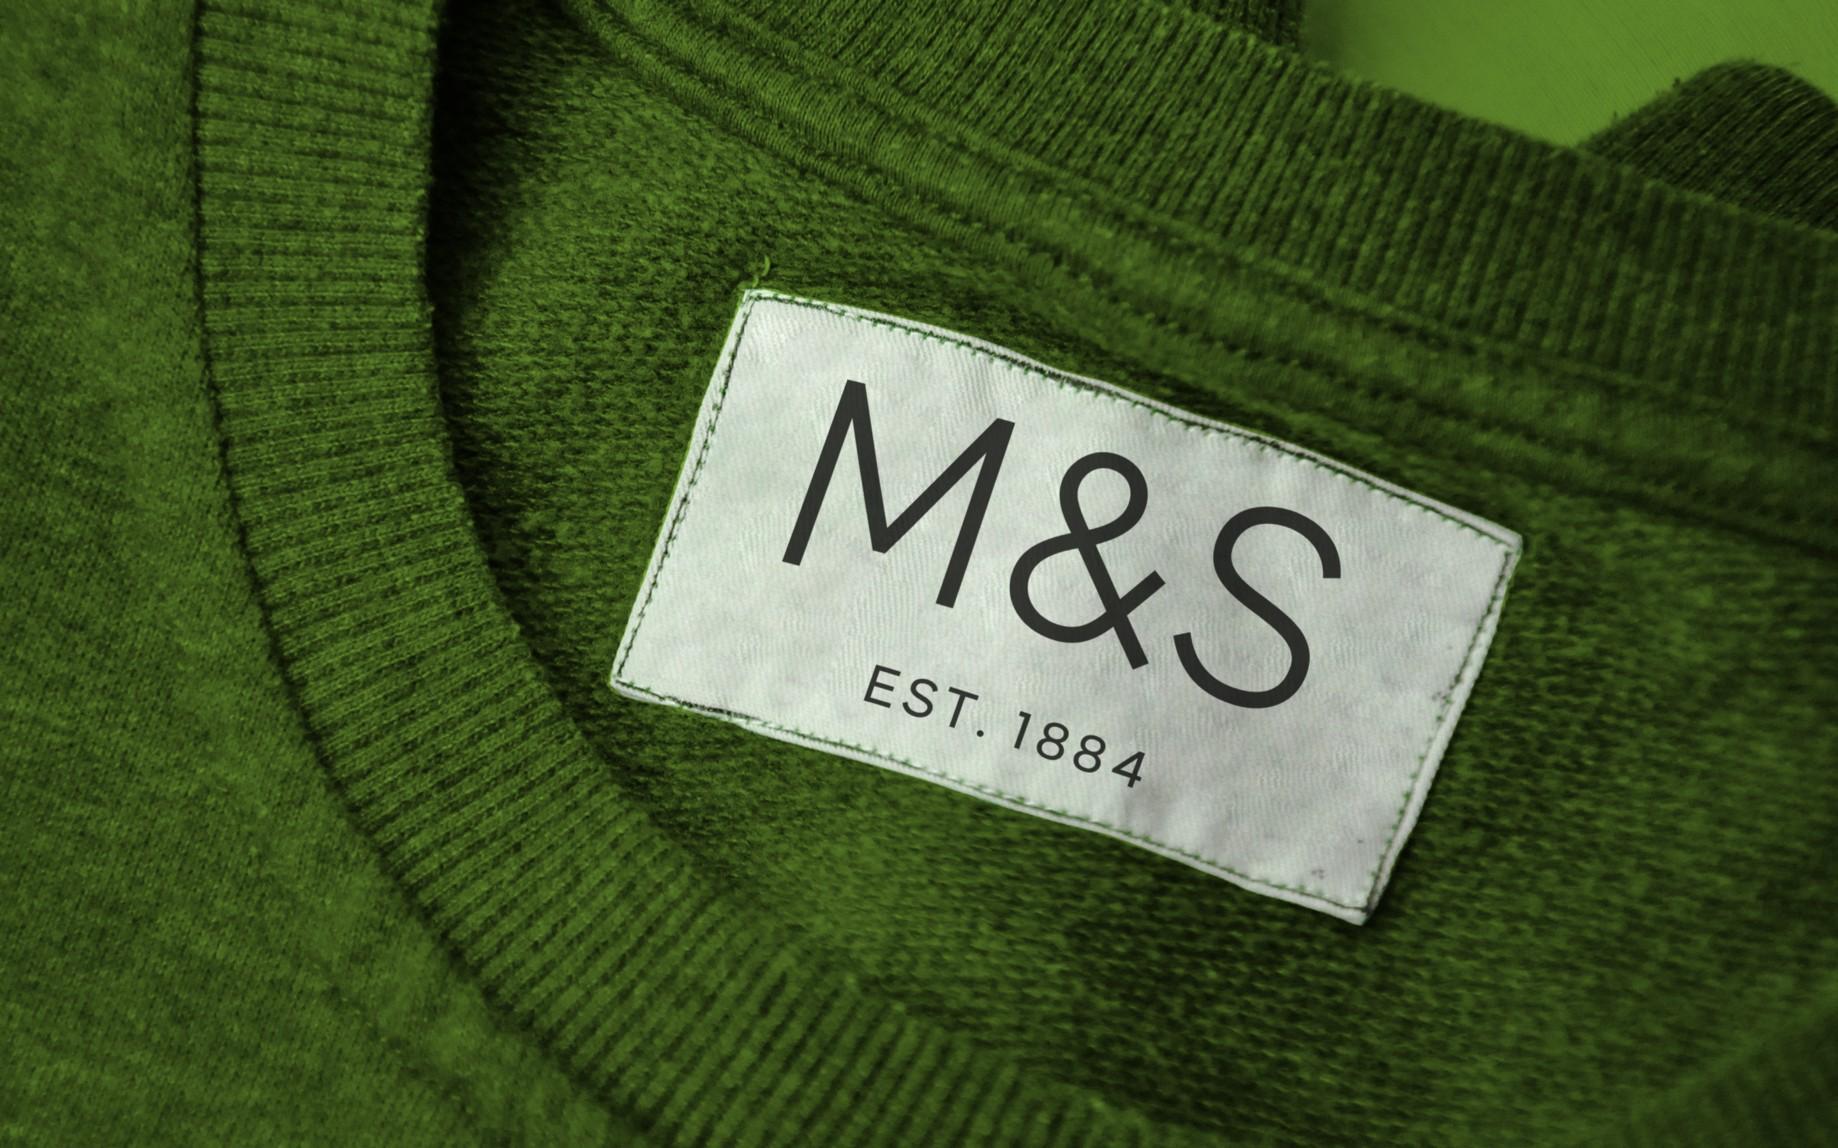 1884 Logo - It's not just branding, it's Marks & Spencer branding